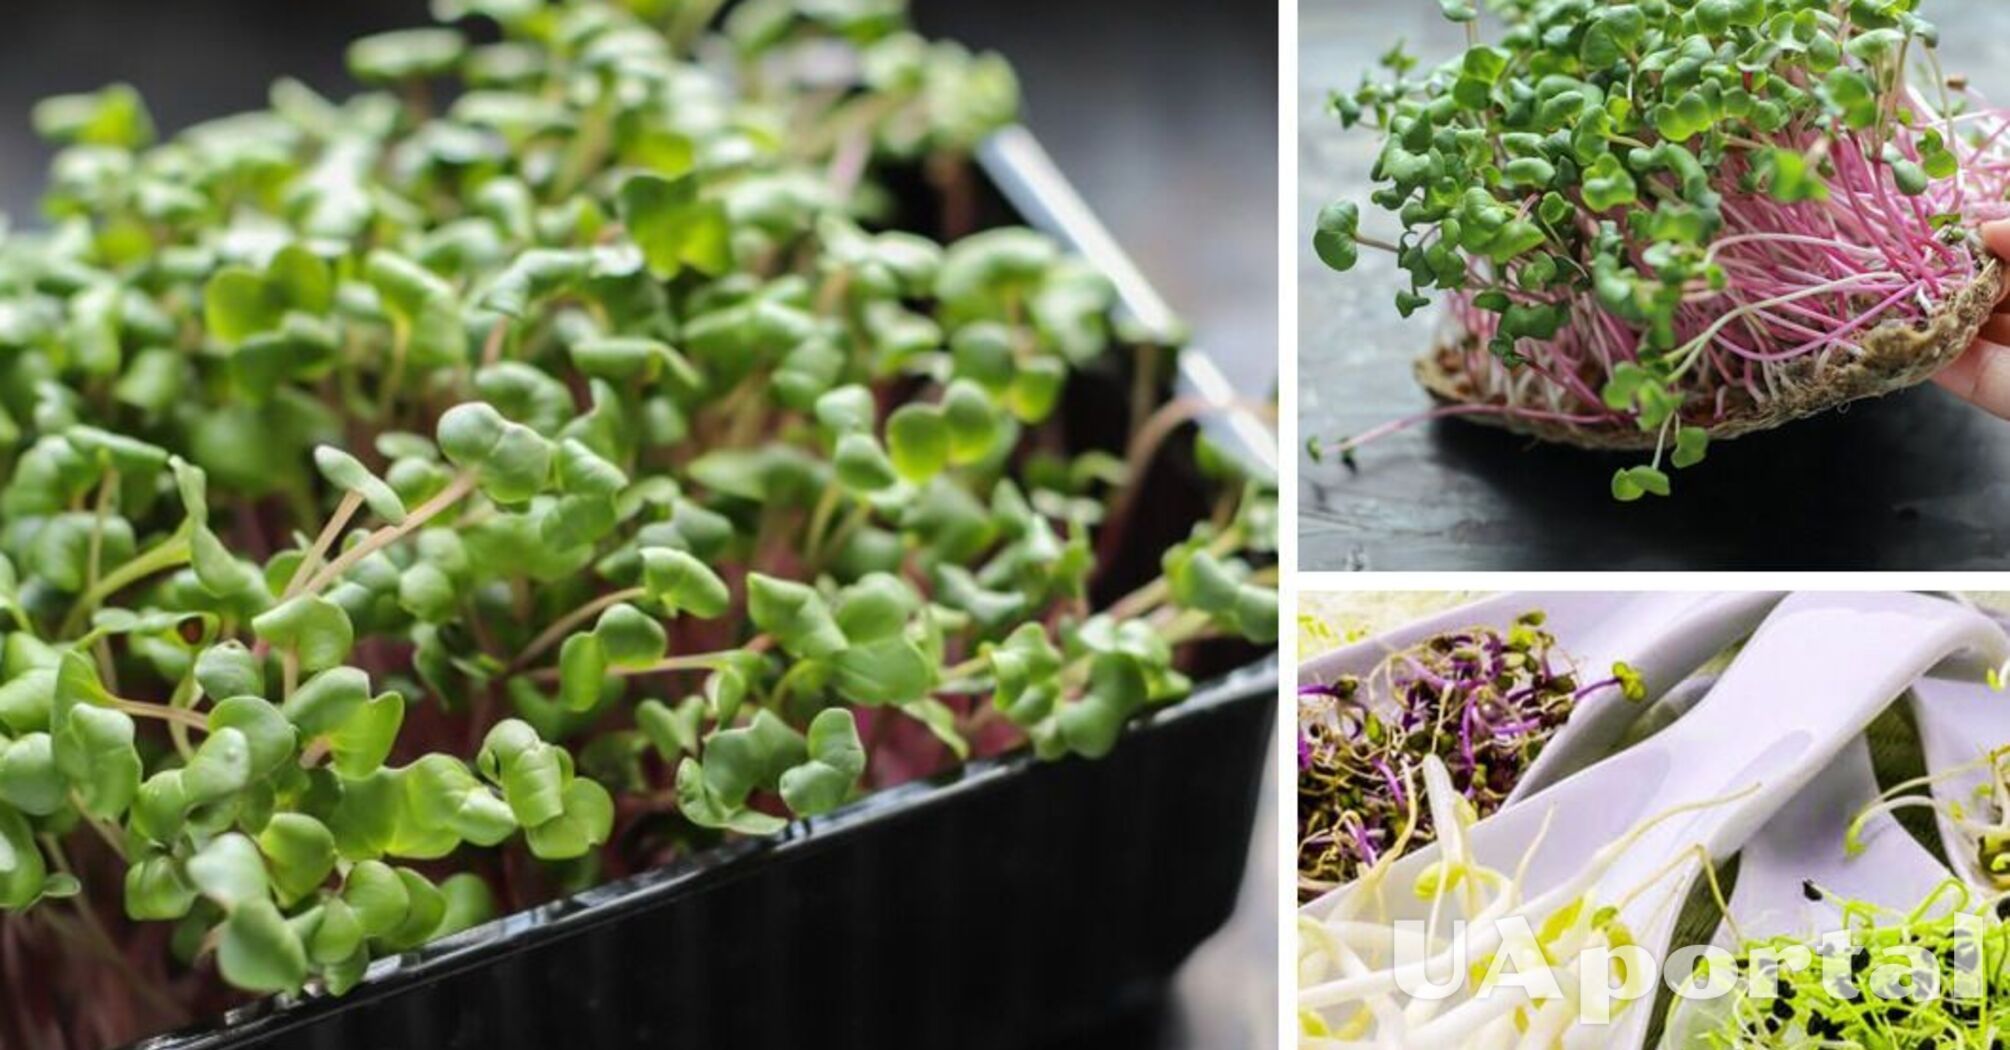 Як виростити мікрозелень взимку, щоб збереглися необхідні вітаміни